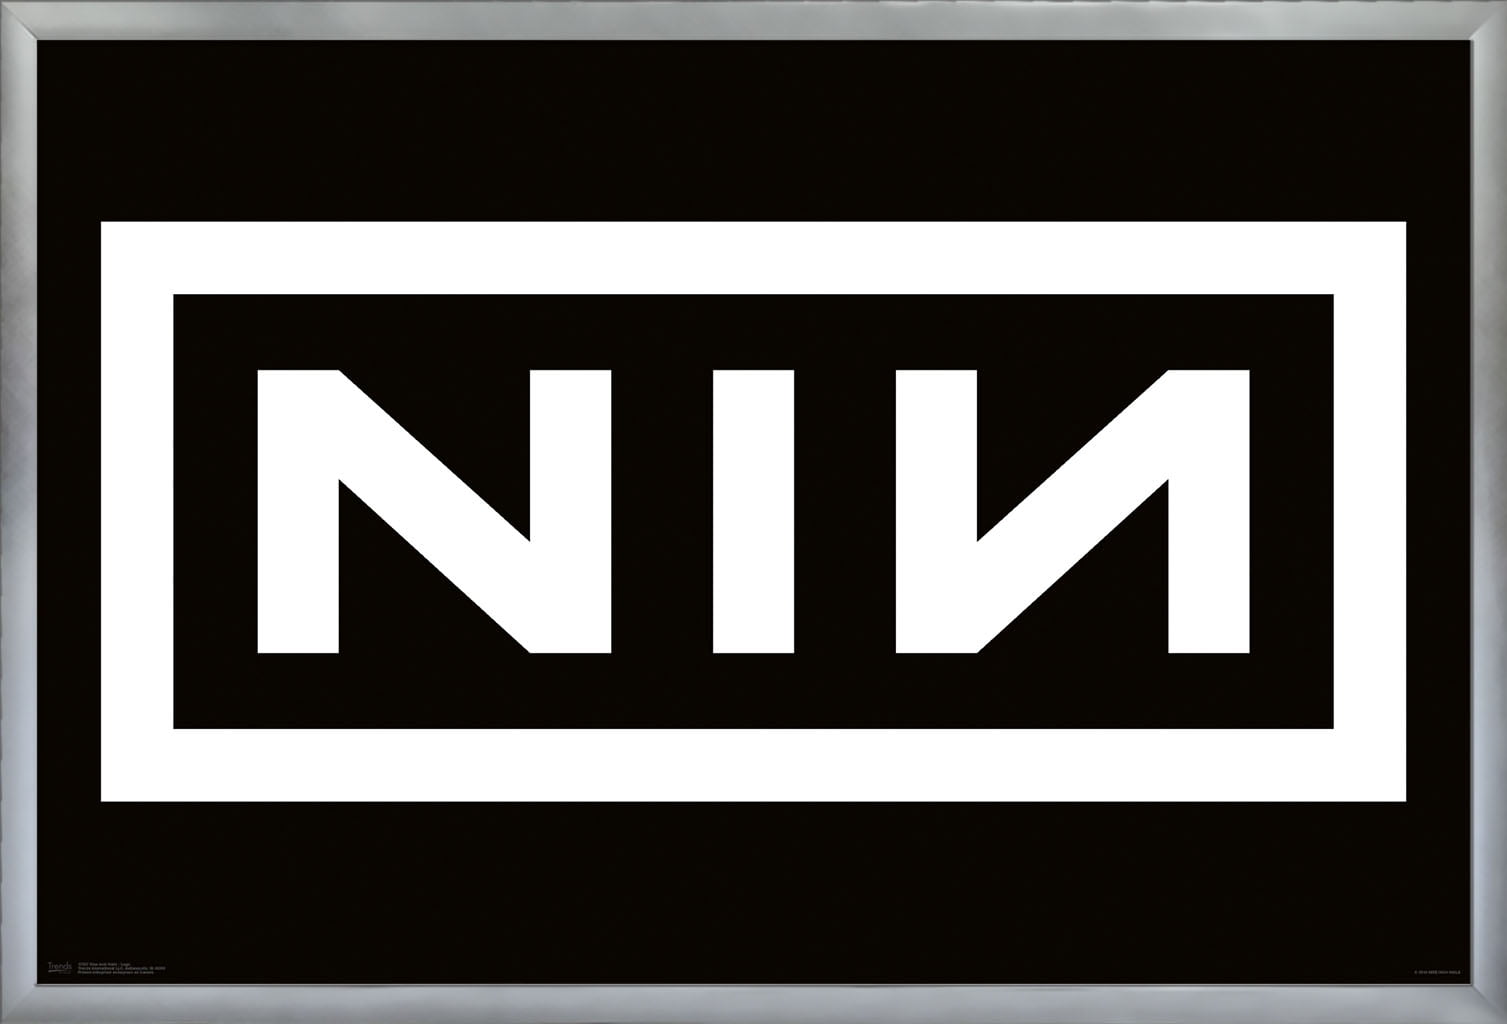 Nine Inch Nails Logo png images | PNGEgg